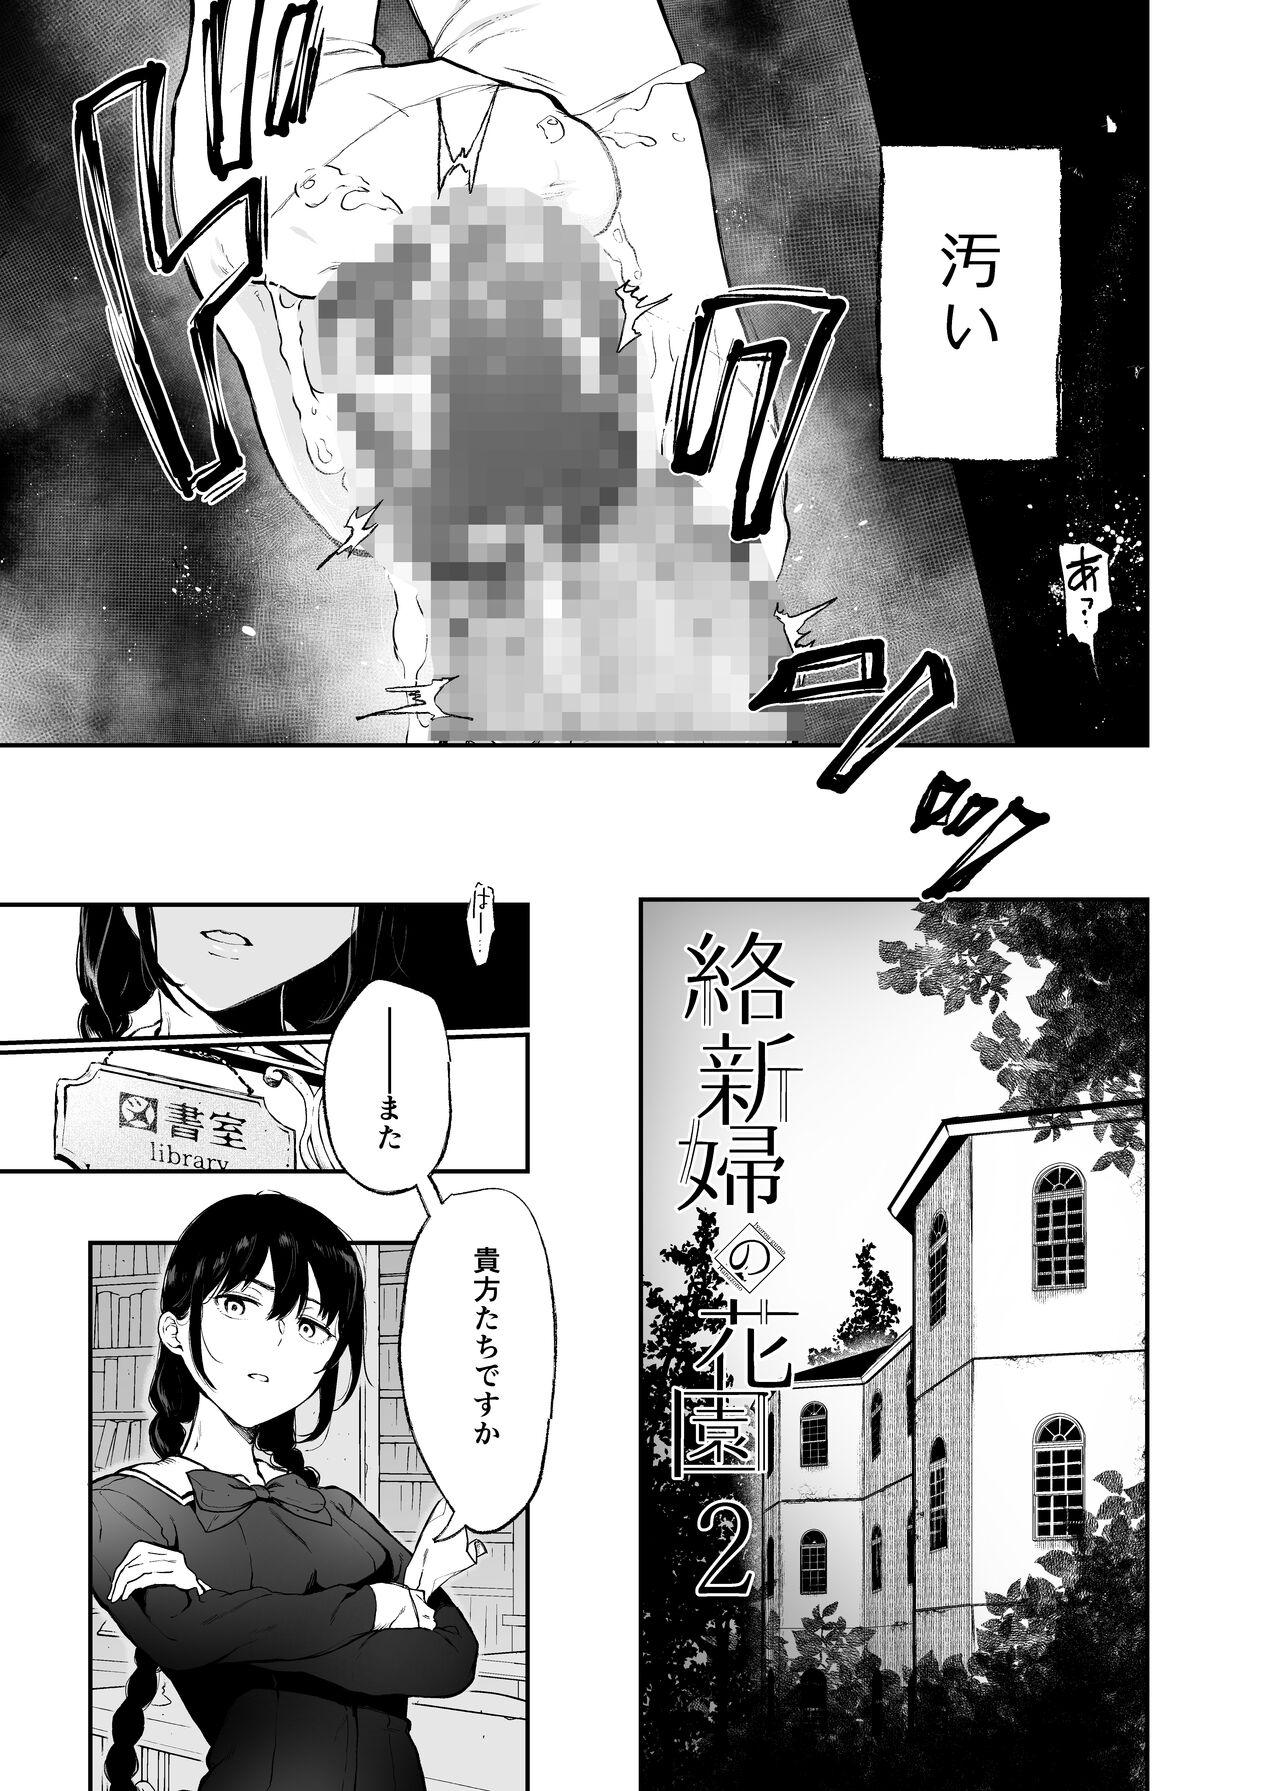 Zorra Jorougumo no Hanazono2 Fleshlight - Page 3